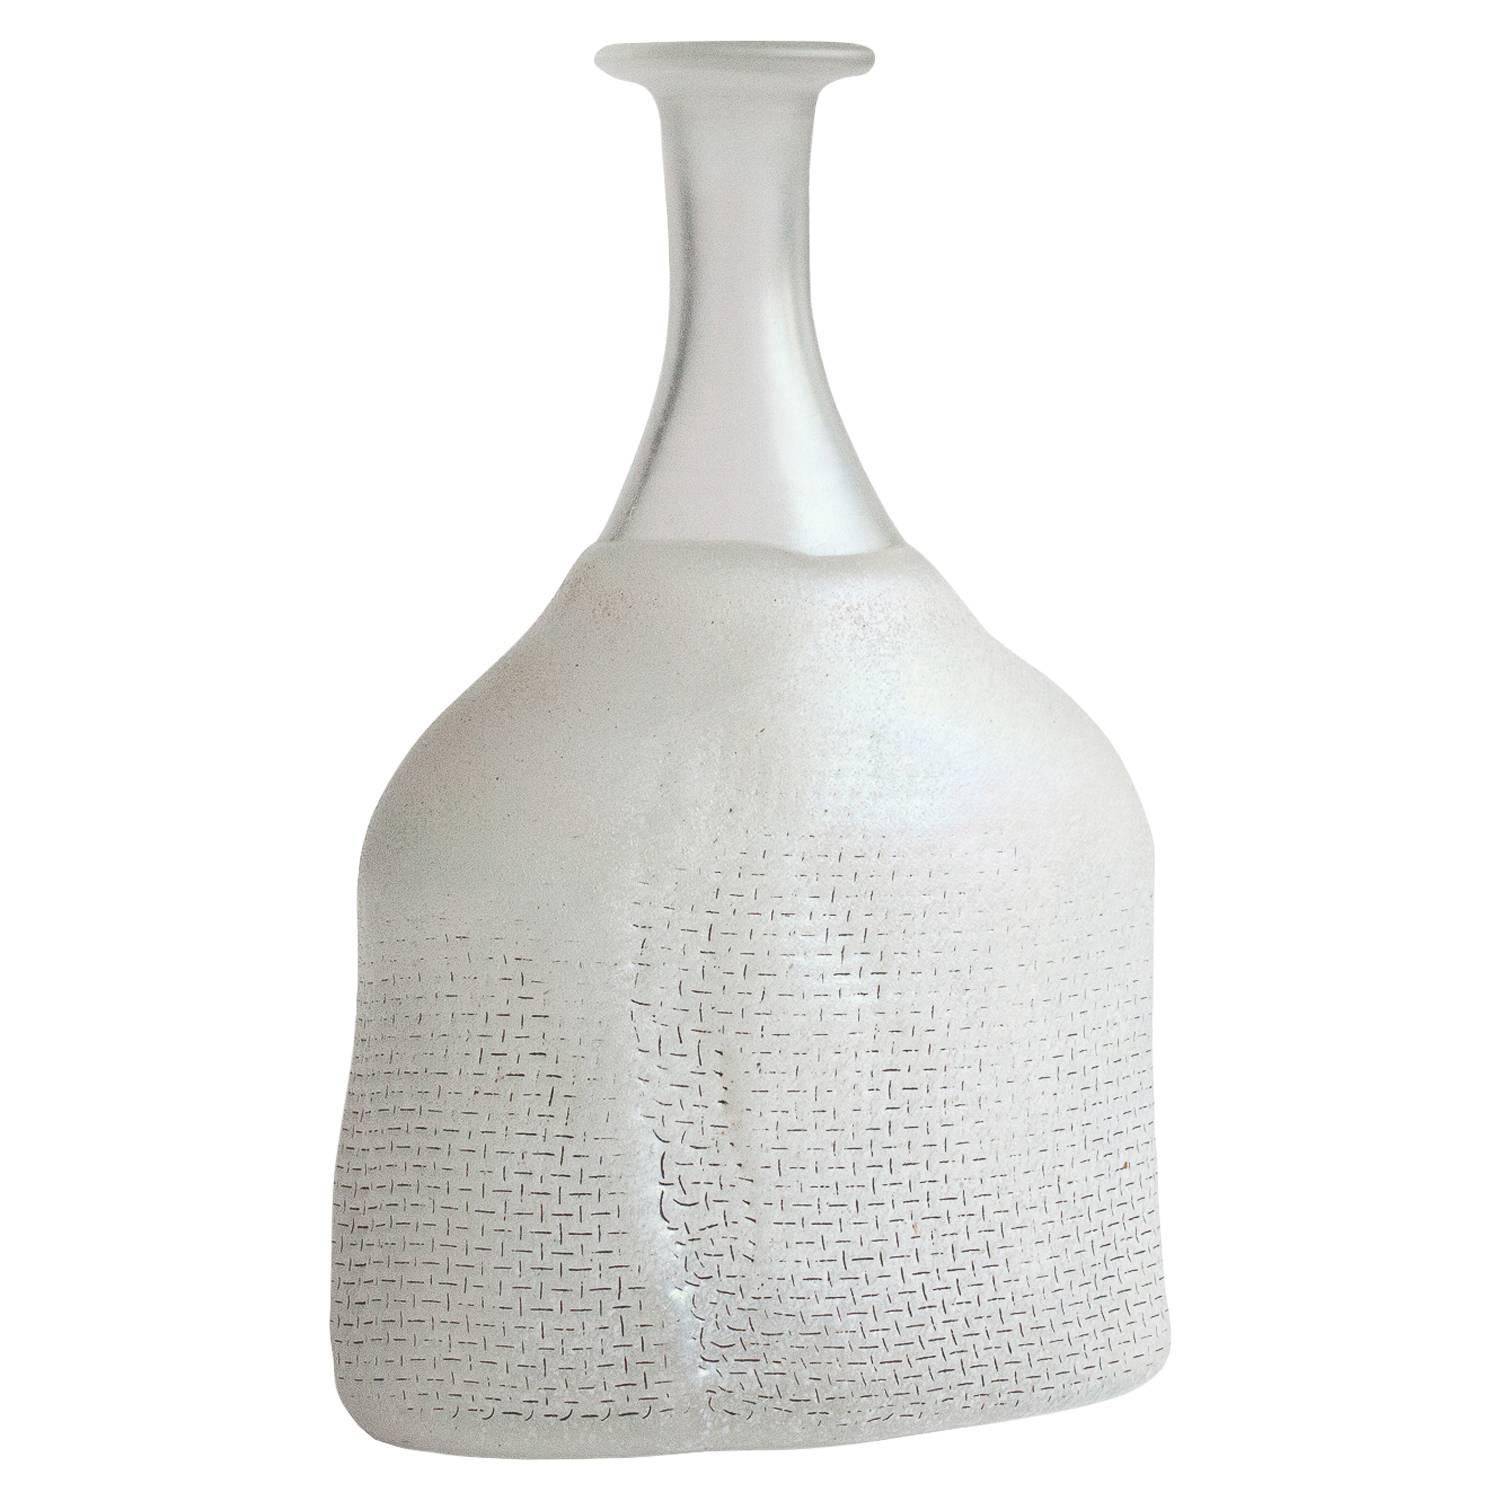 Bertil Vallien Kosta Boda Glass Bottle Vase